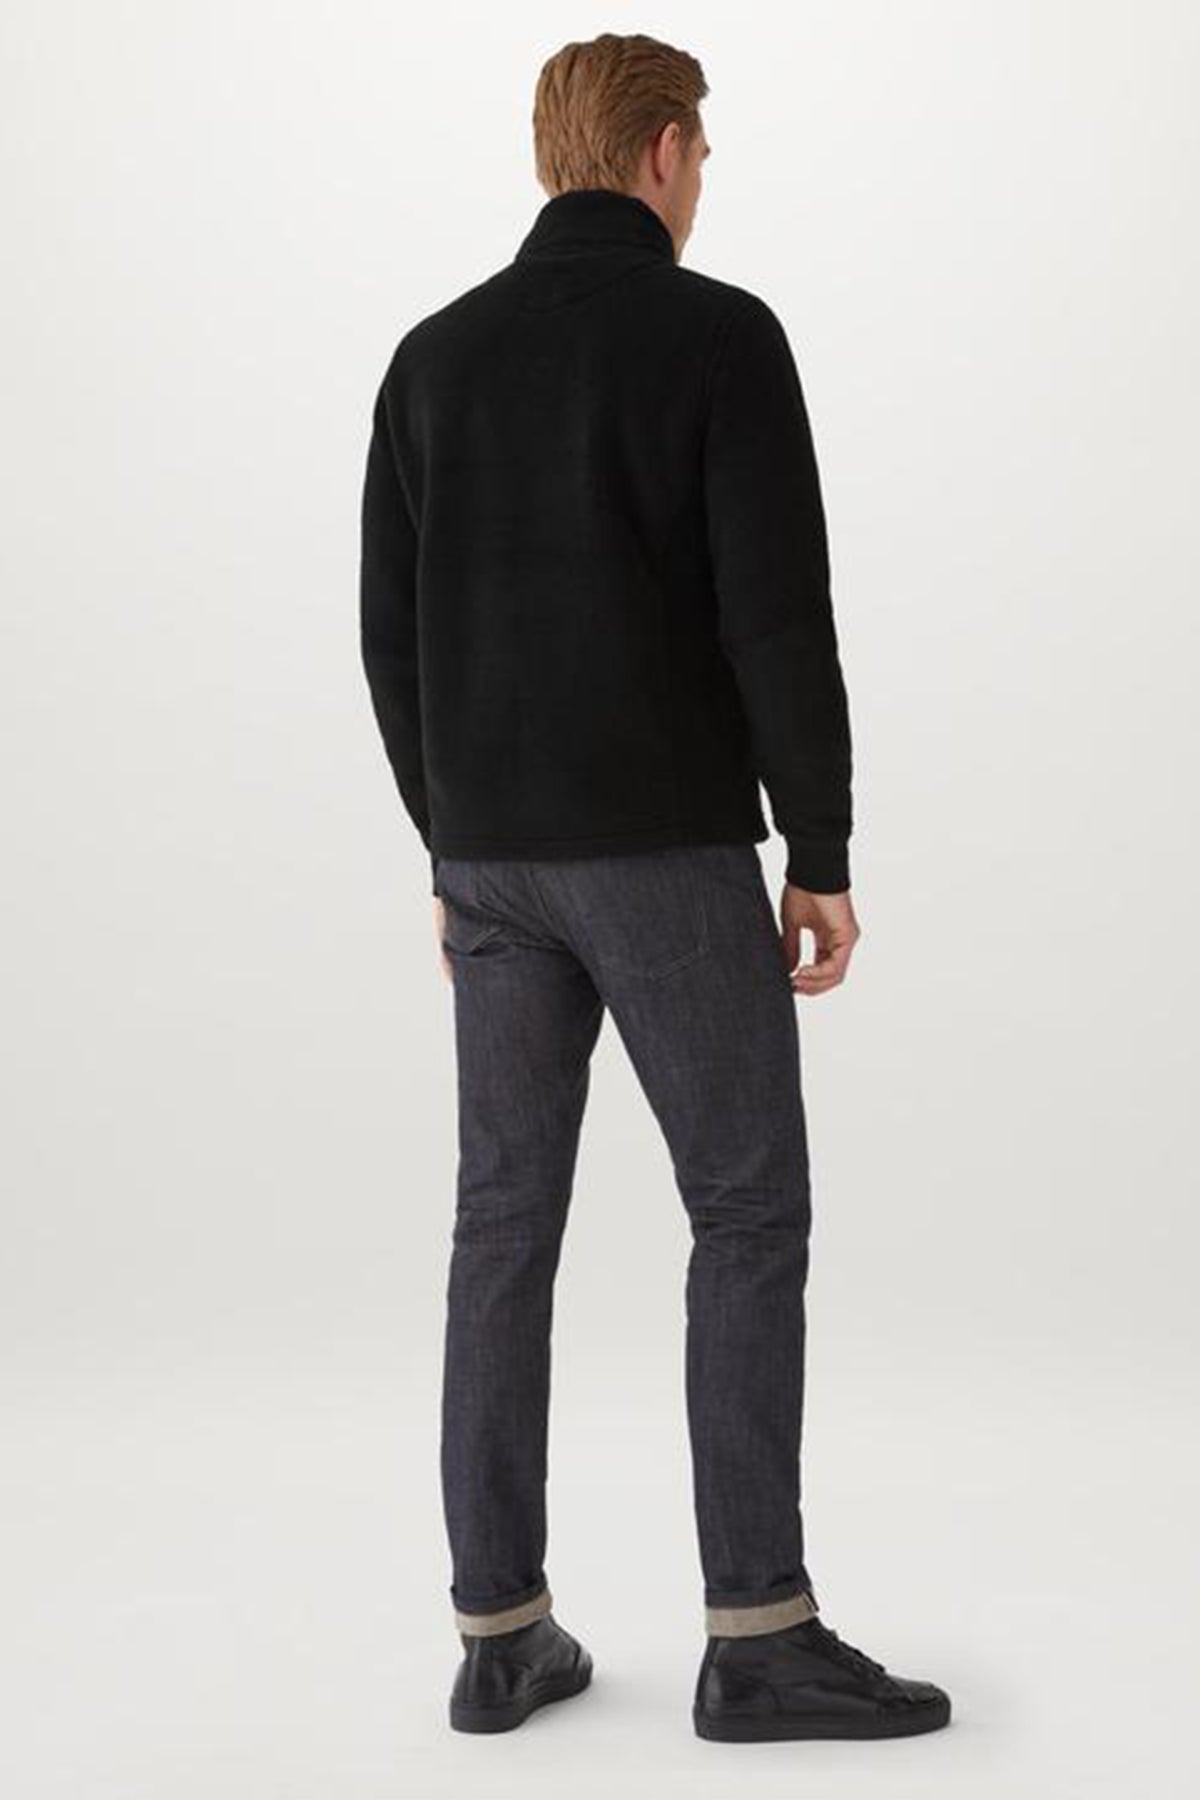 Belstaff Herne Fermuarlı Polar Sweatshirt Ceket-Libas Trendy Fashion Store